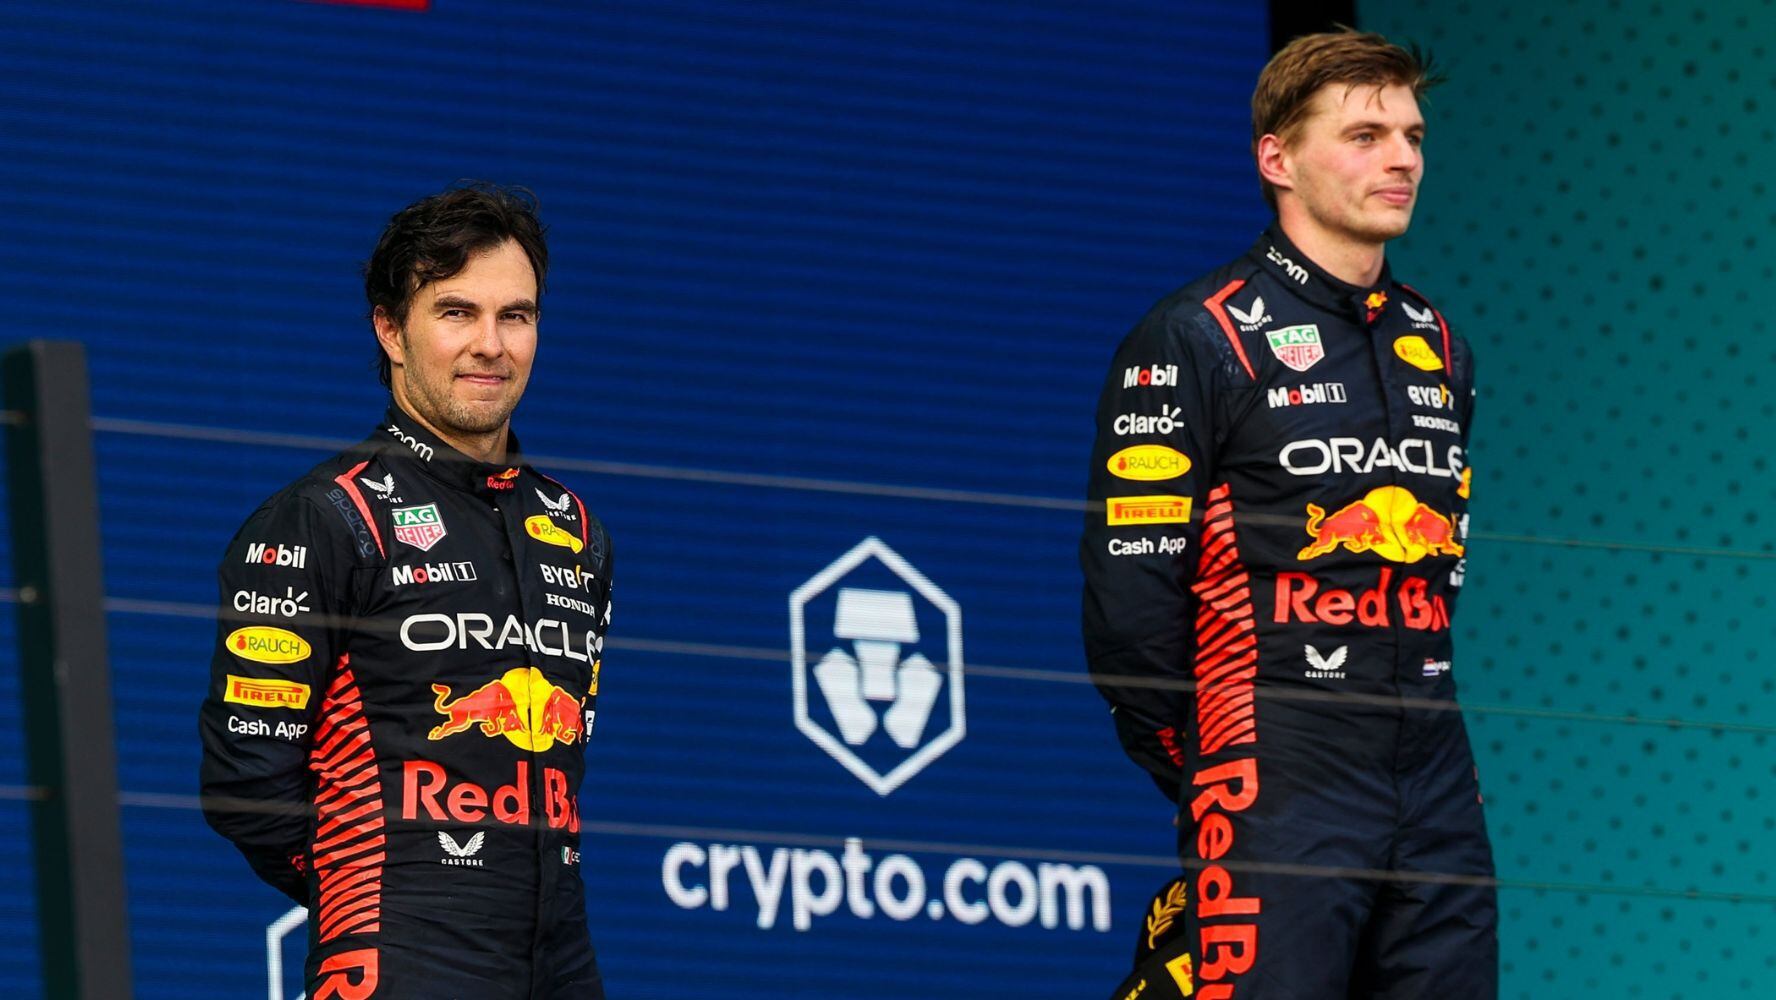 Red Bull consiguió el 1-2 en el campeonato de pilotos y el de constructores. (Foto: Mexsport)